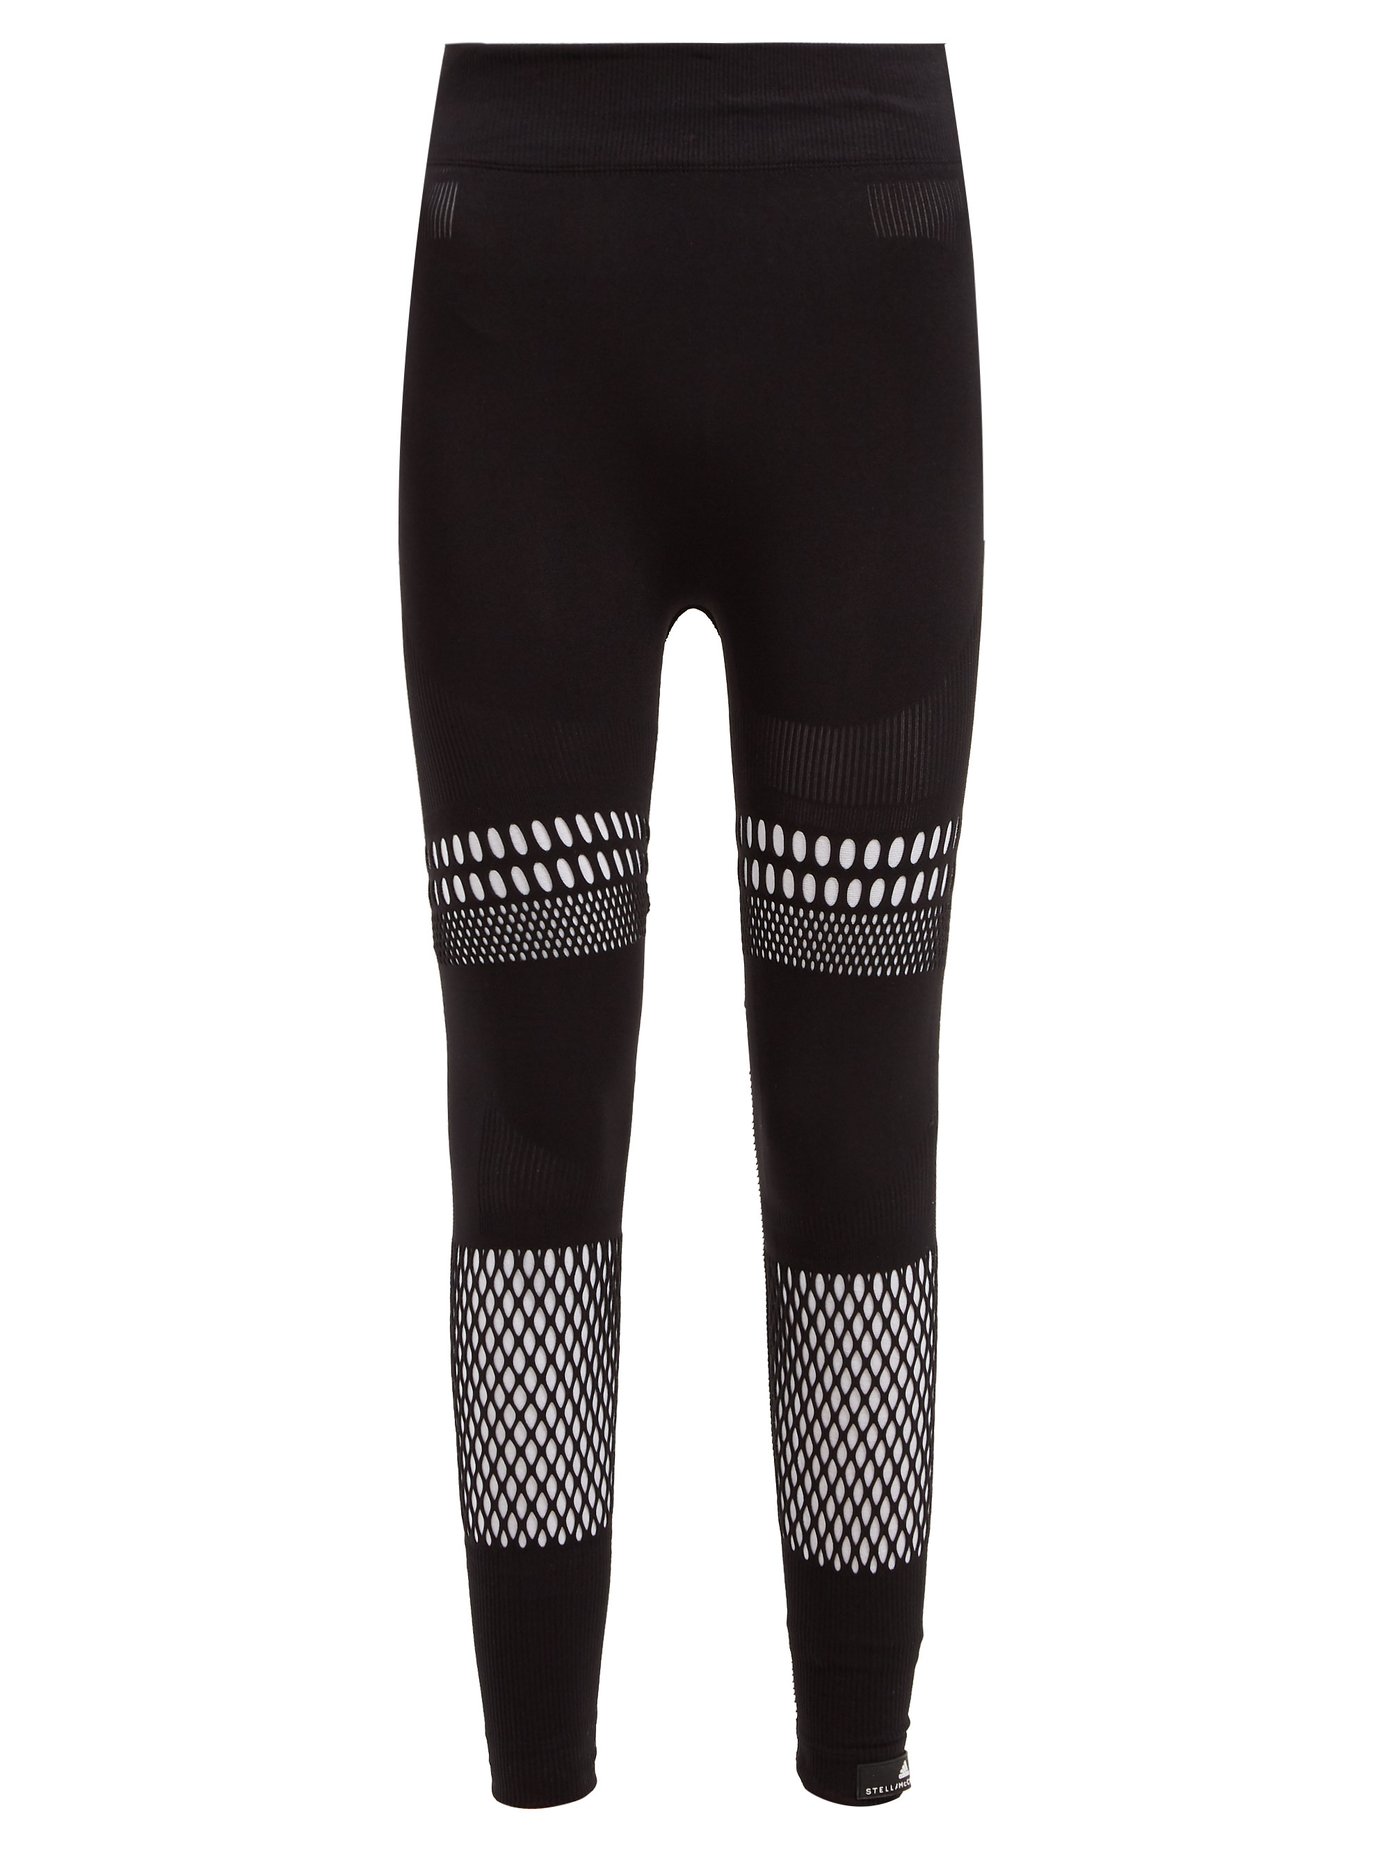 Warp Knit laser-cut leggings | Adidas 